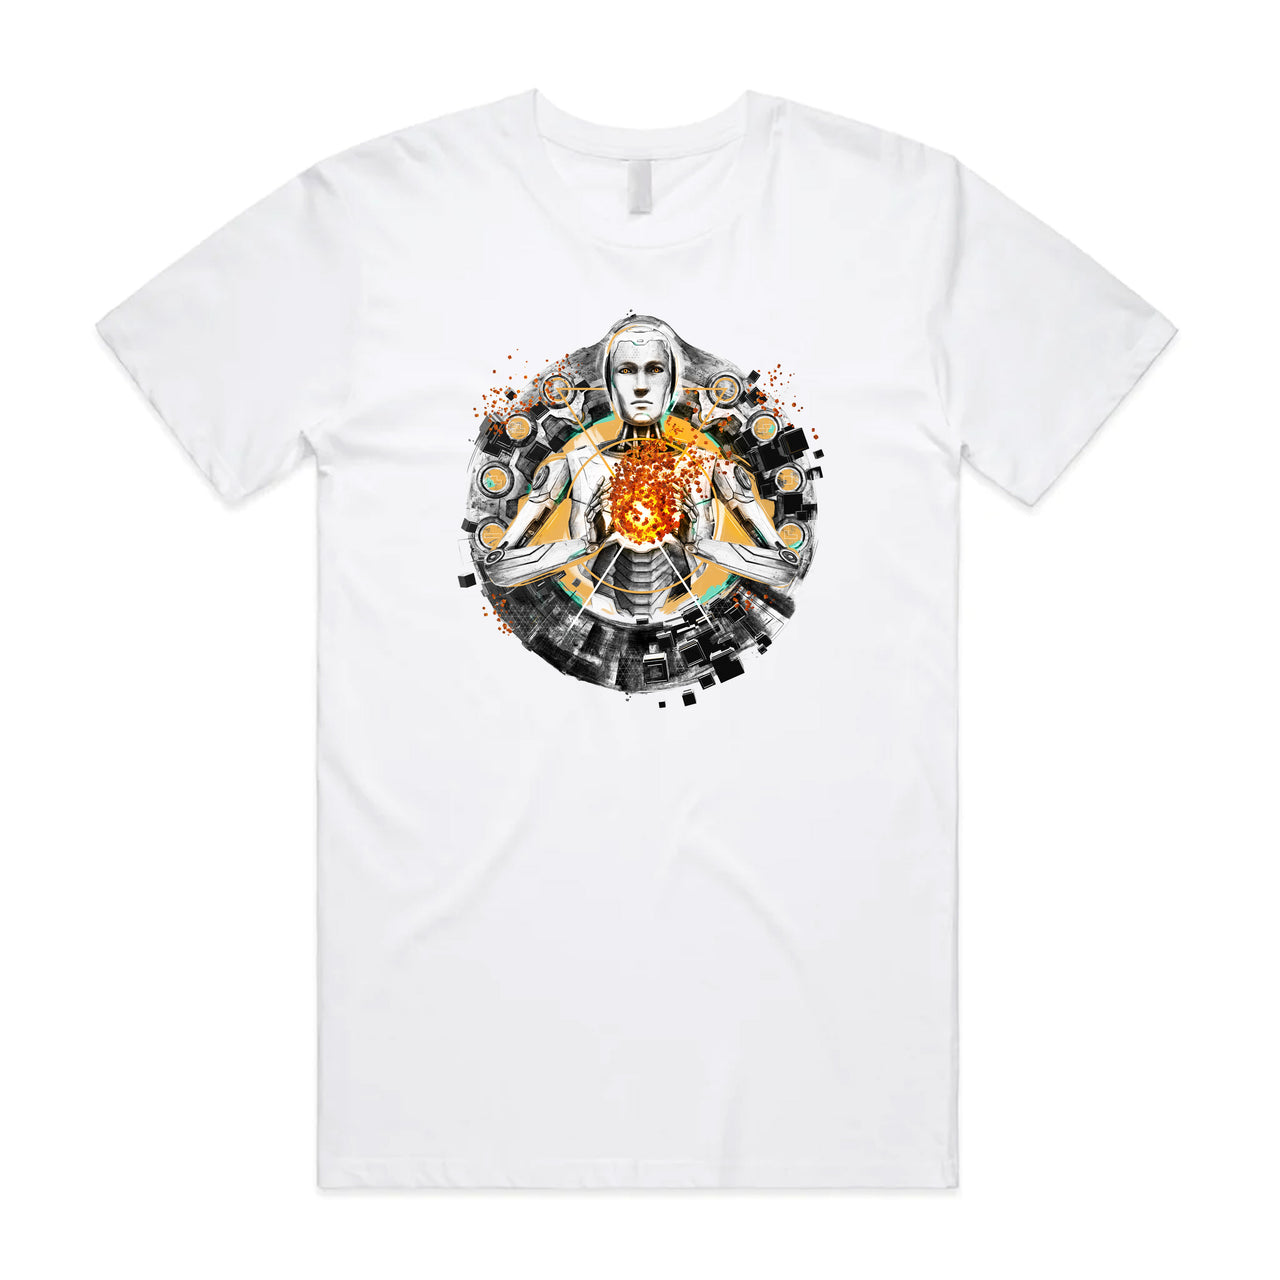 The Talos Principle 2 T-Shirt (White)